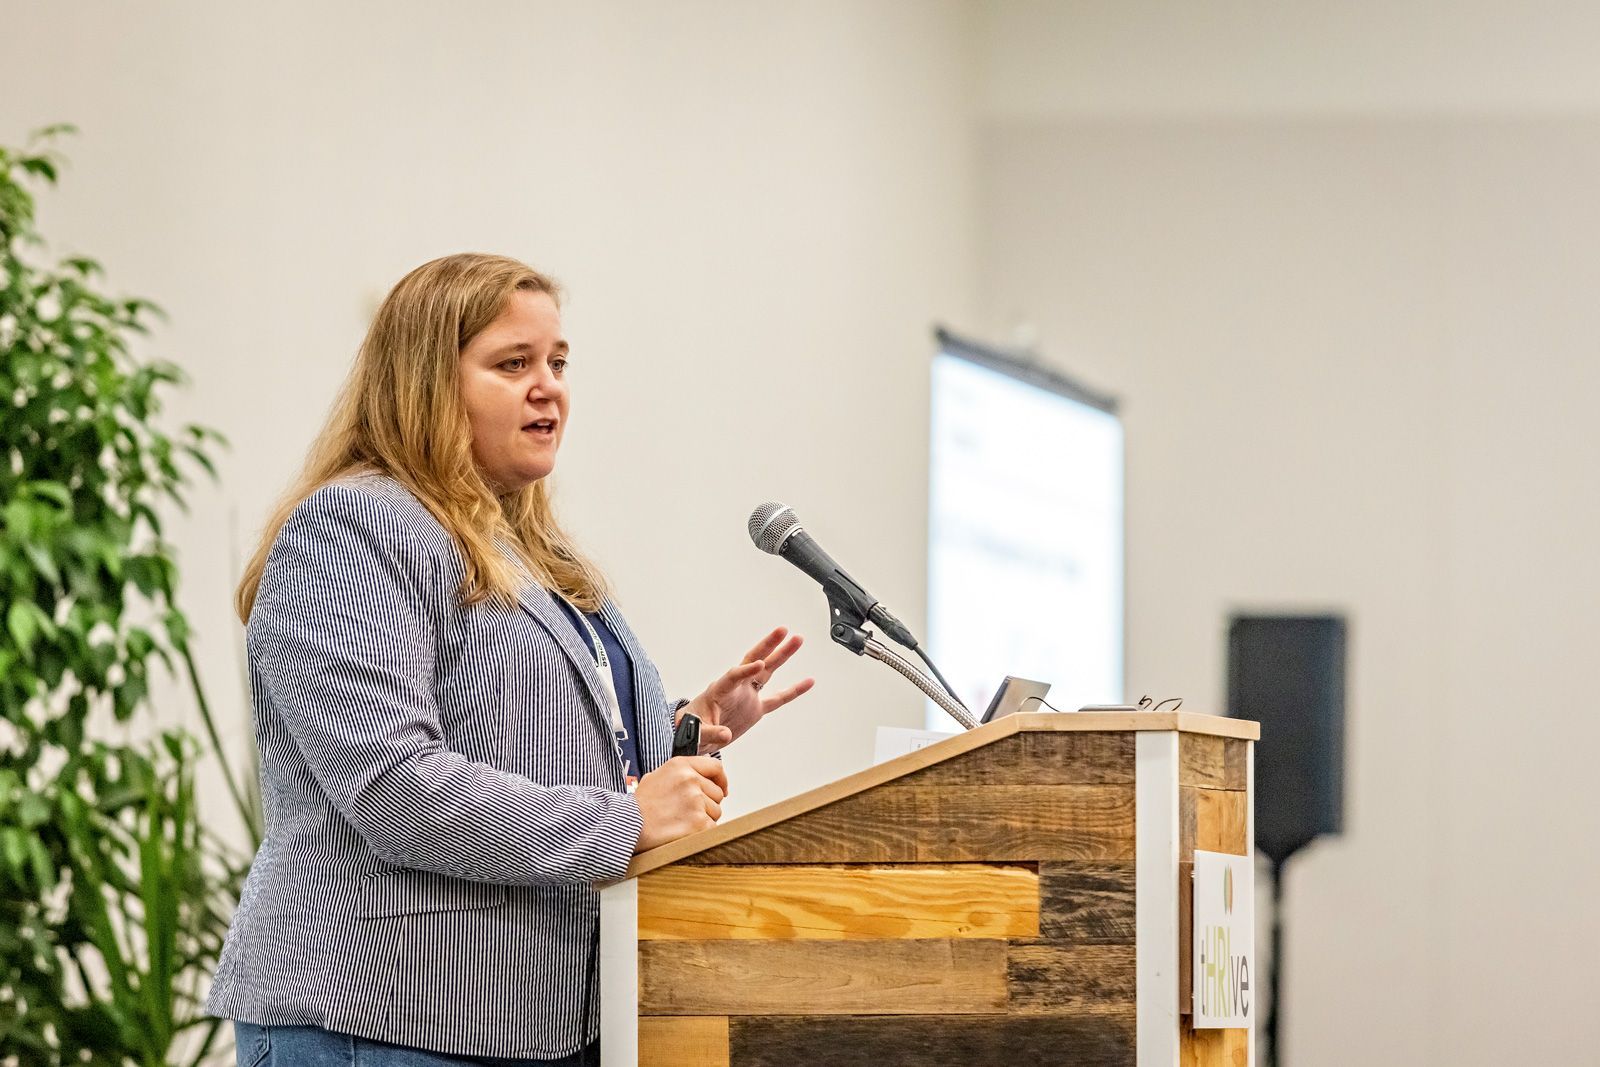 Cultivate speaker at a podium presenting